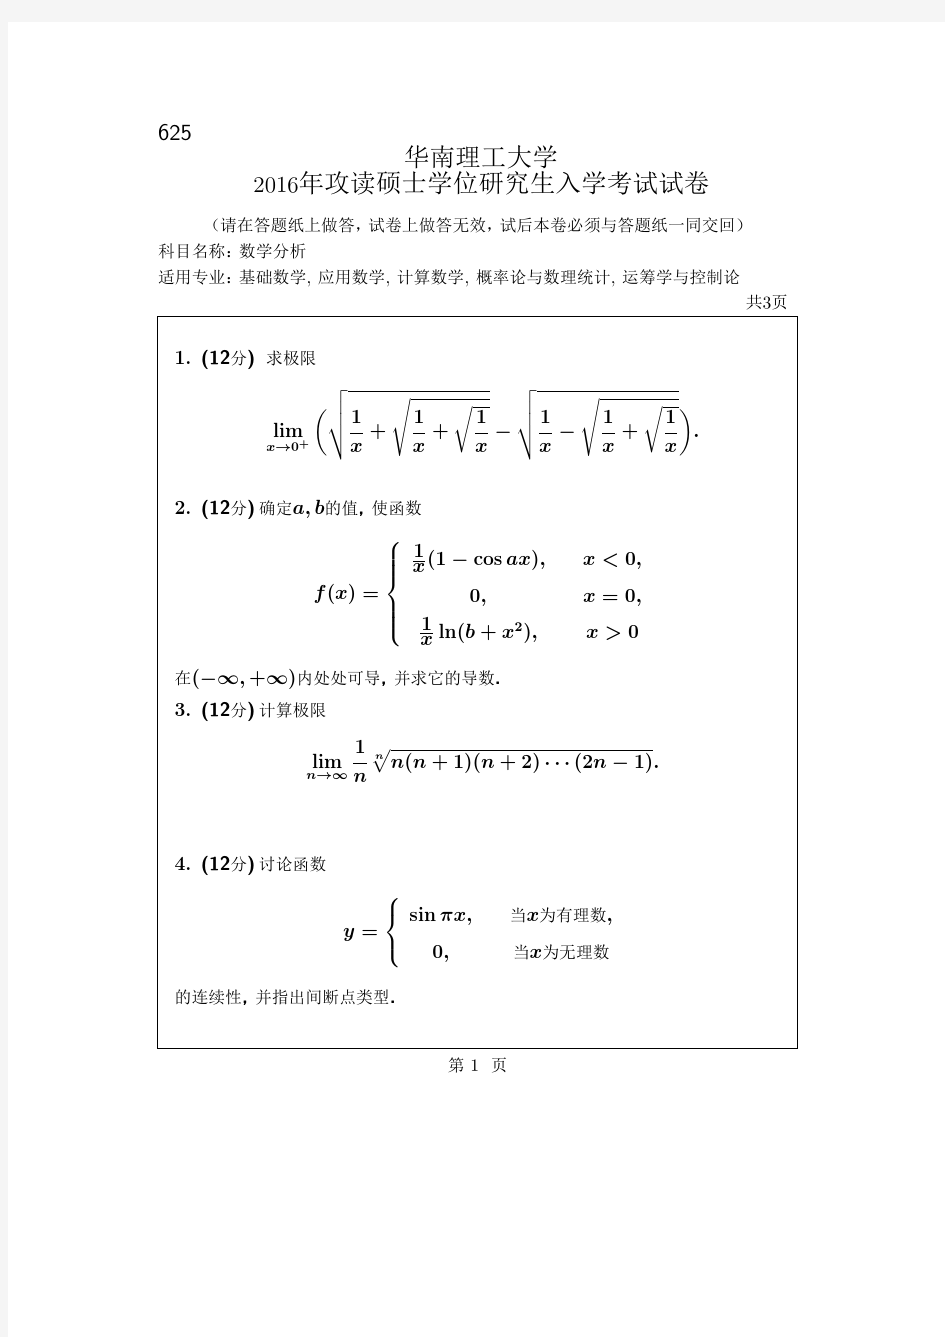 华南理工大学考研试题2016年-2018年625数学分析